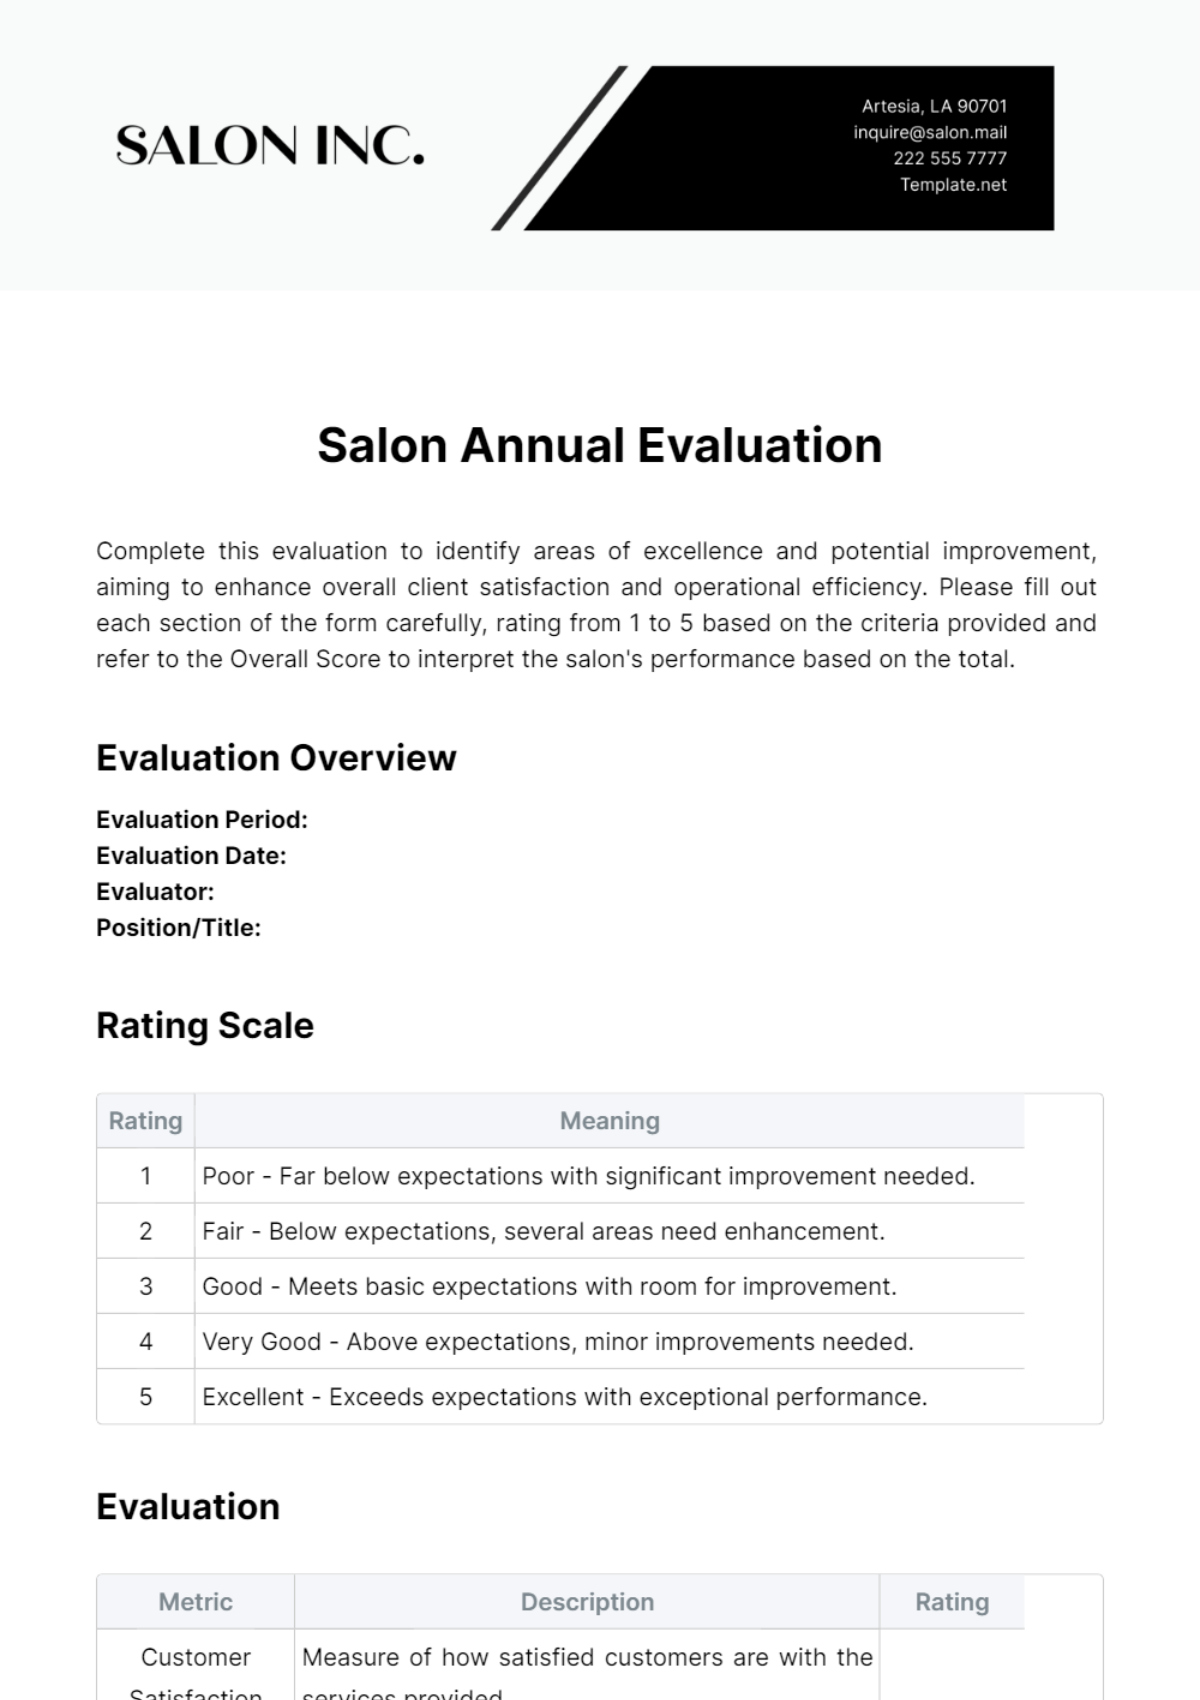 Salon Annual Evaluation Template